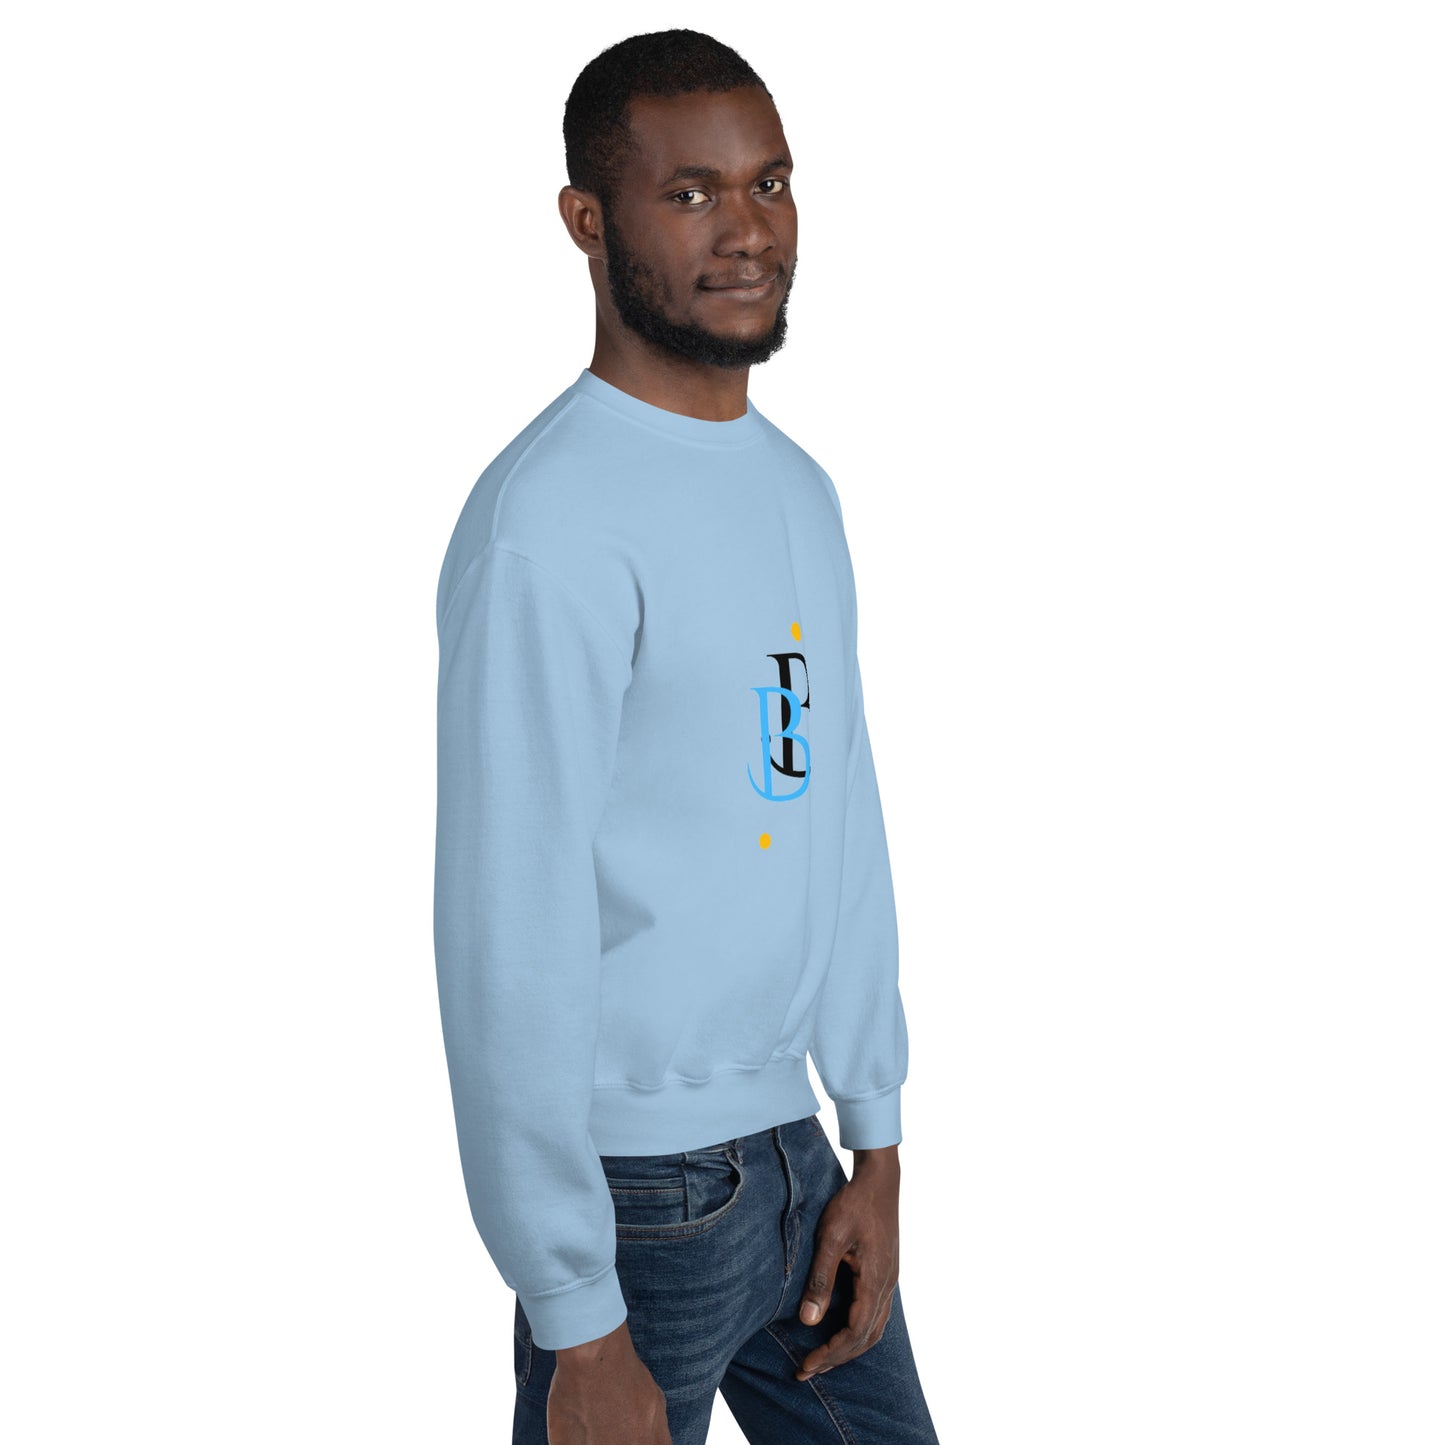 Spelling Type Unisex Sweatshirt By Bbless